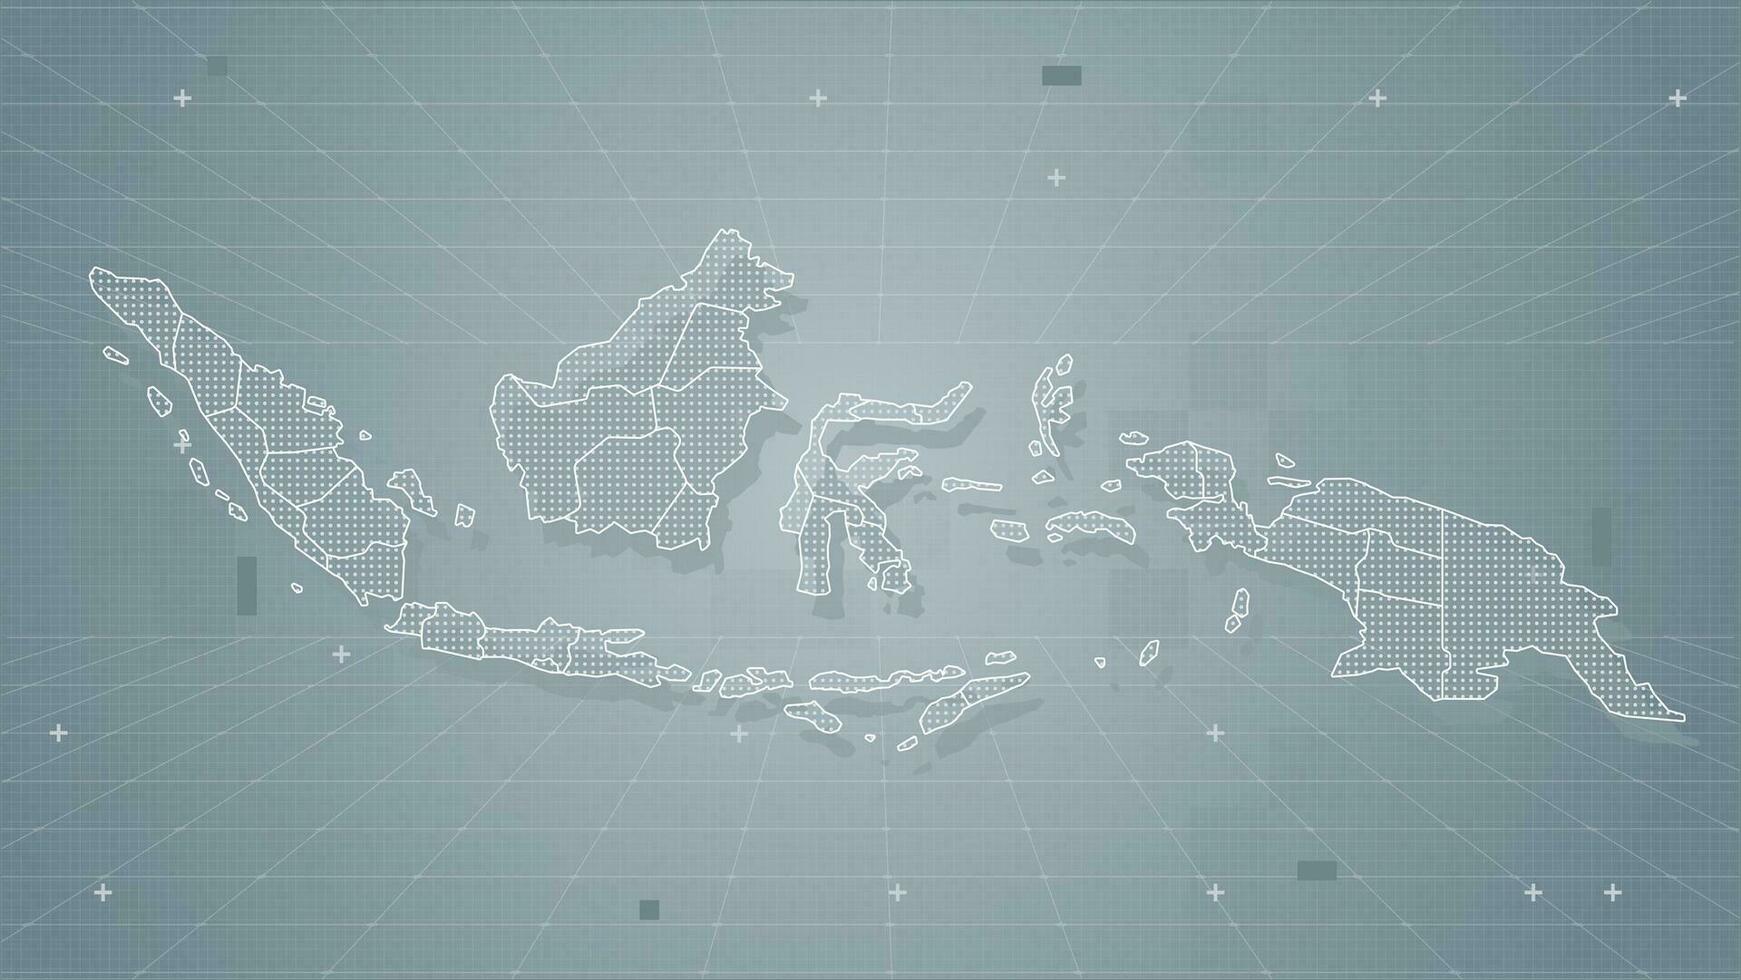 cool grau abstrak technologi Vektor Technik stilisiert modern Indonesien Karte Hintergrund stilisiert Drahtmodell und Punkte zum Daten Visualisierung und Infografiken hud gui ui